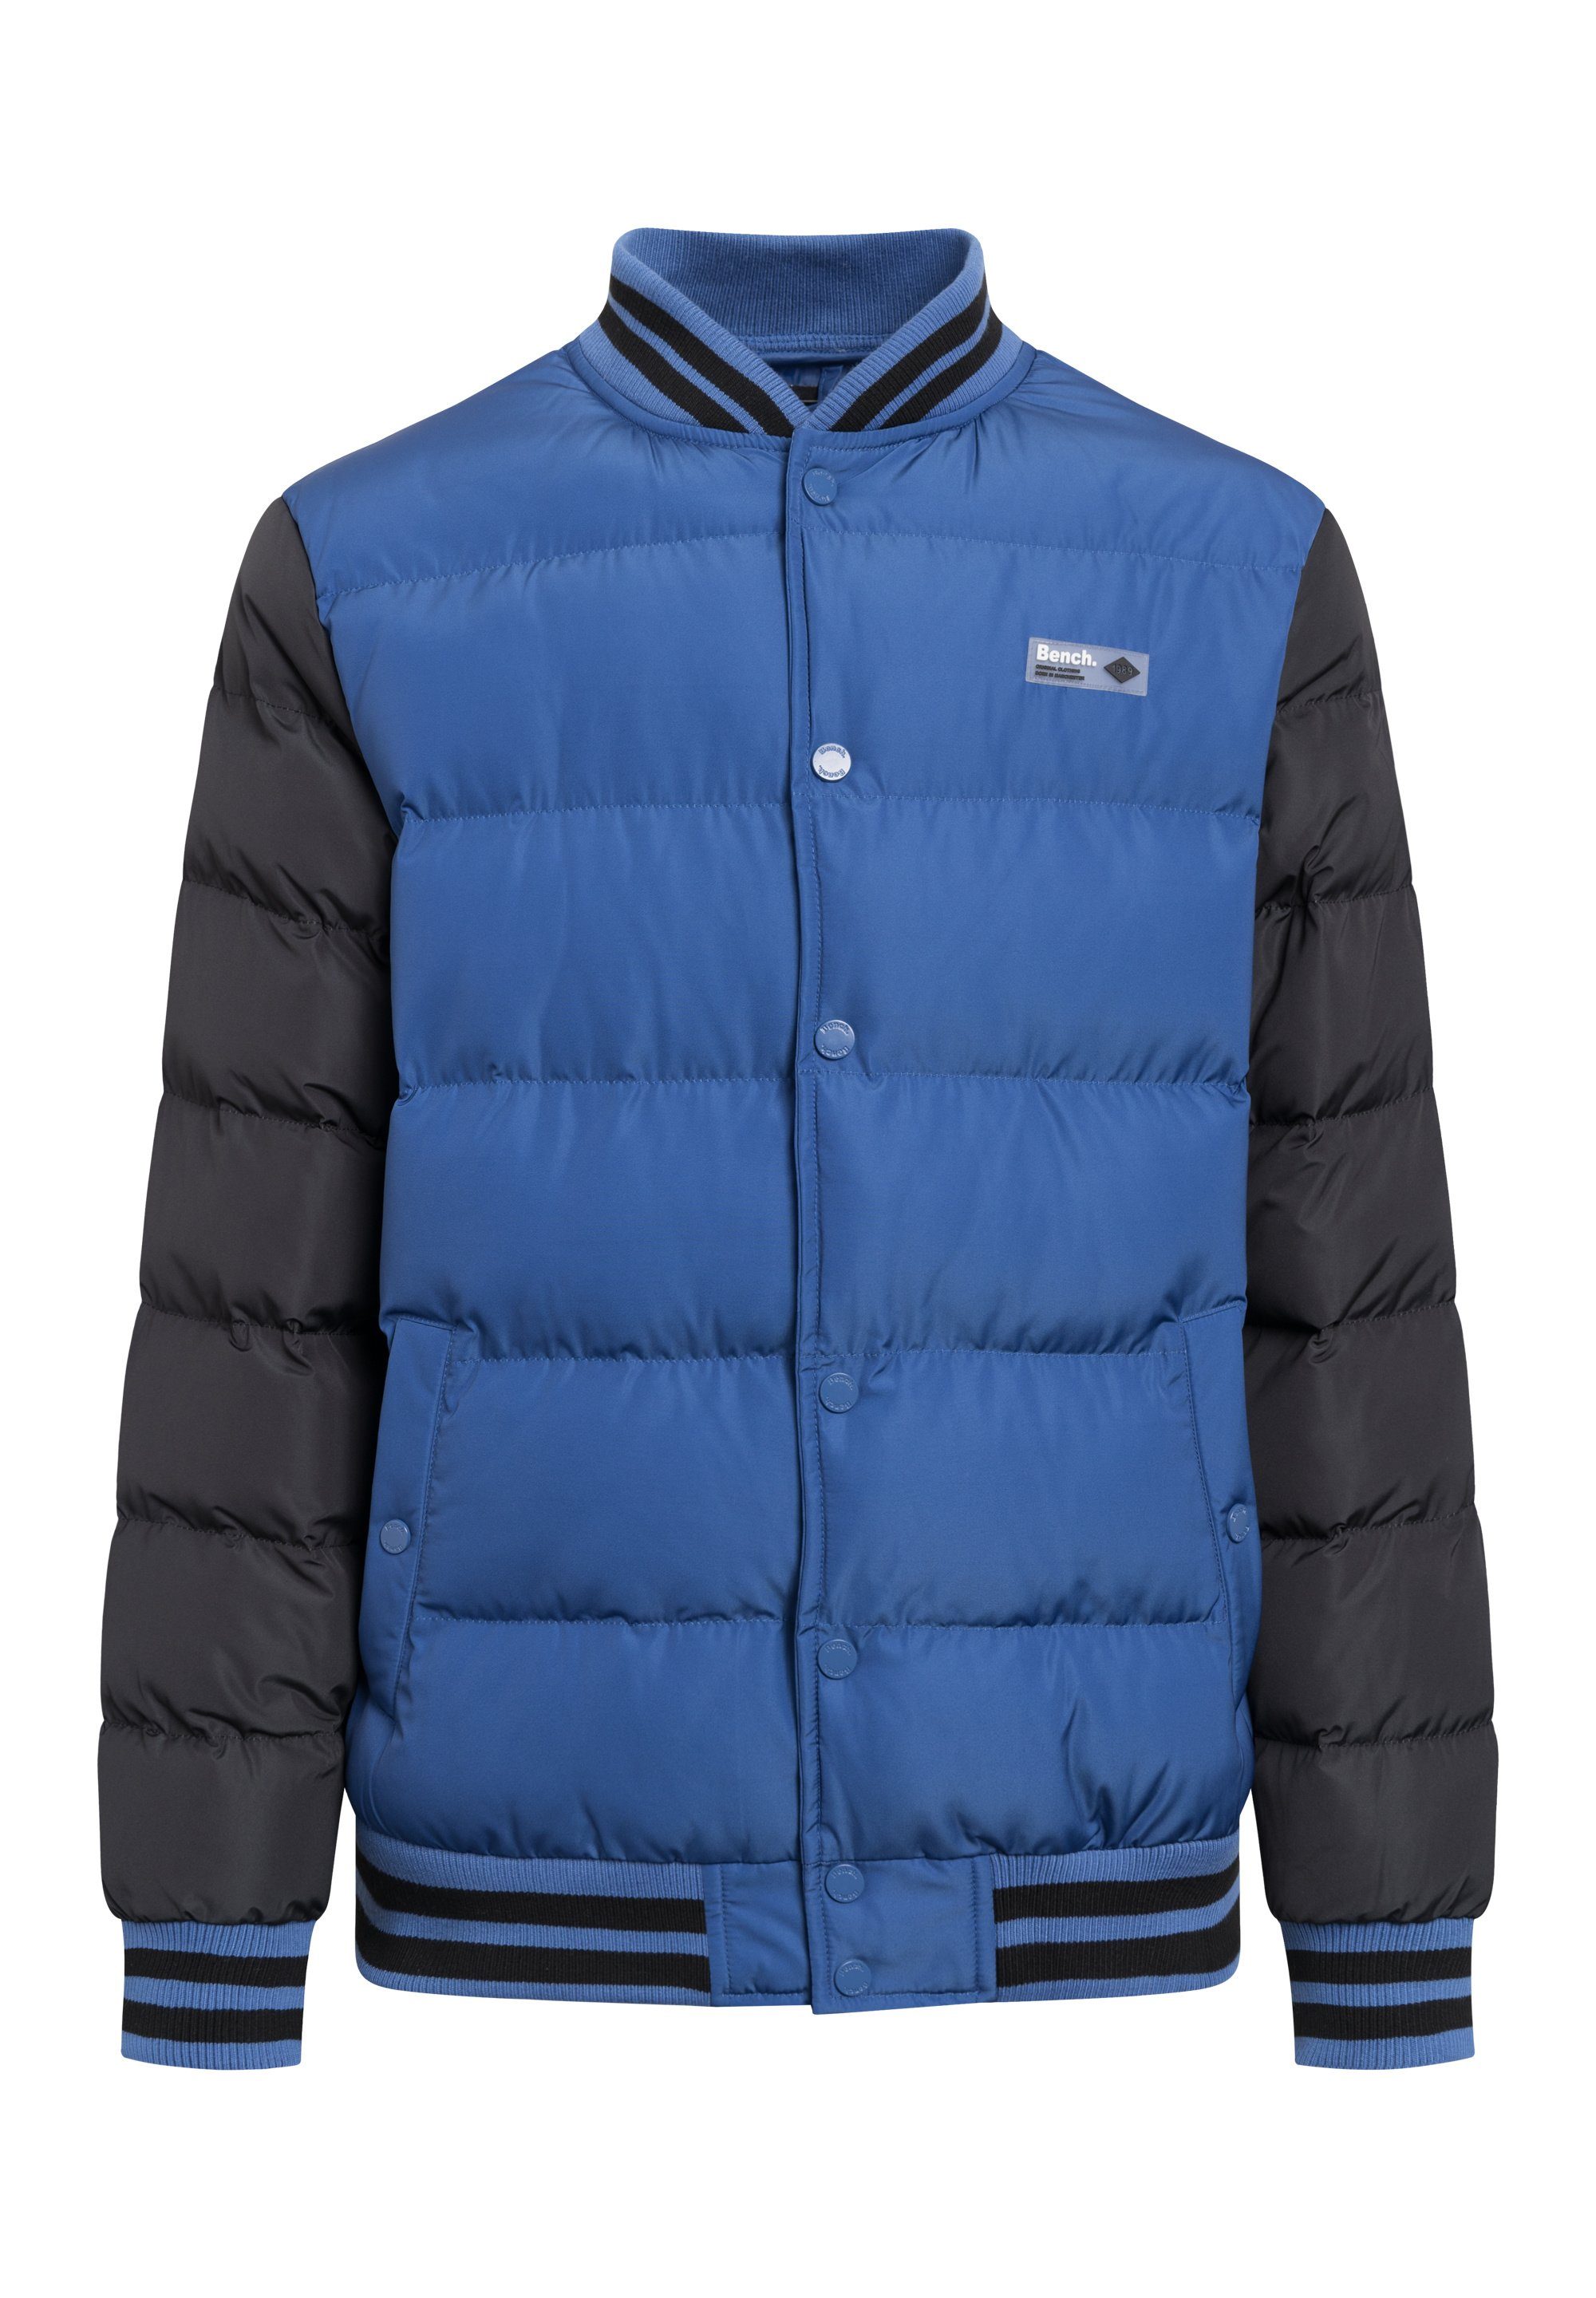 stylische REGGIE Jacke BLACK Winterjacke COBALT / BLUE Bench. und Warme